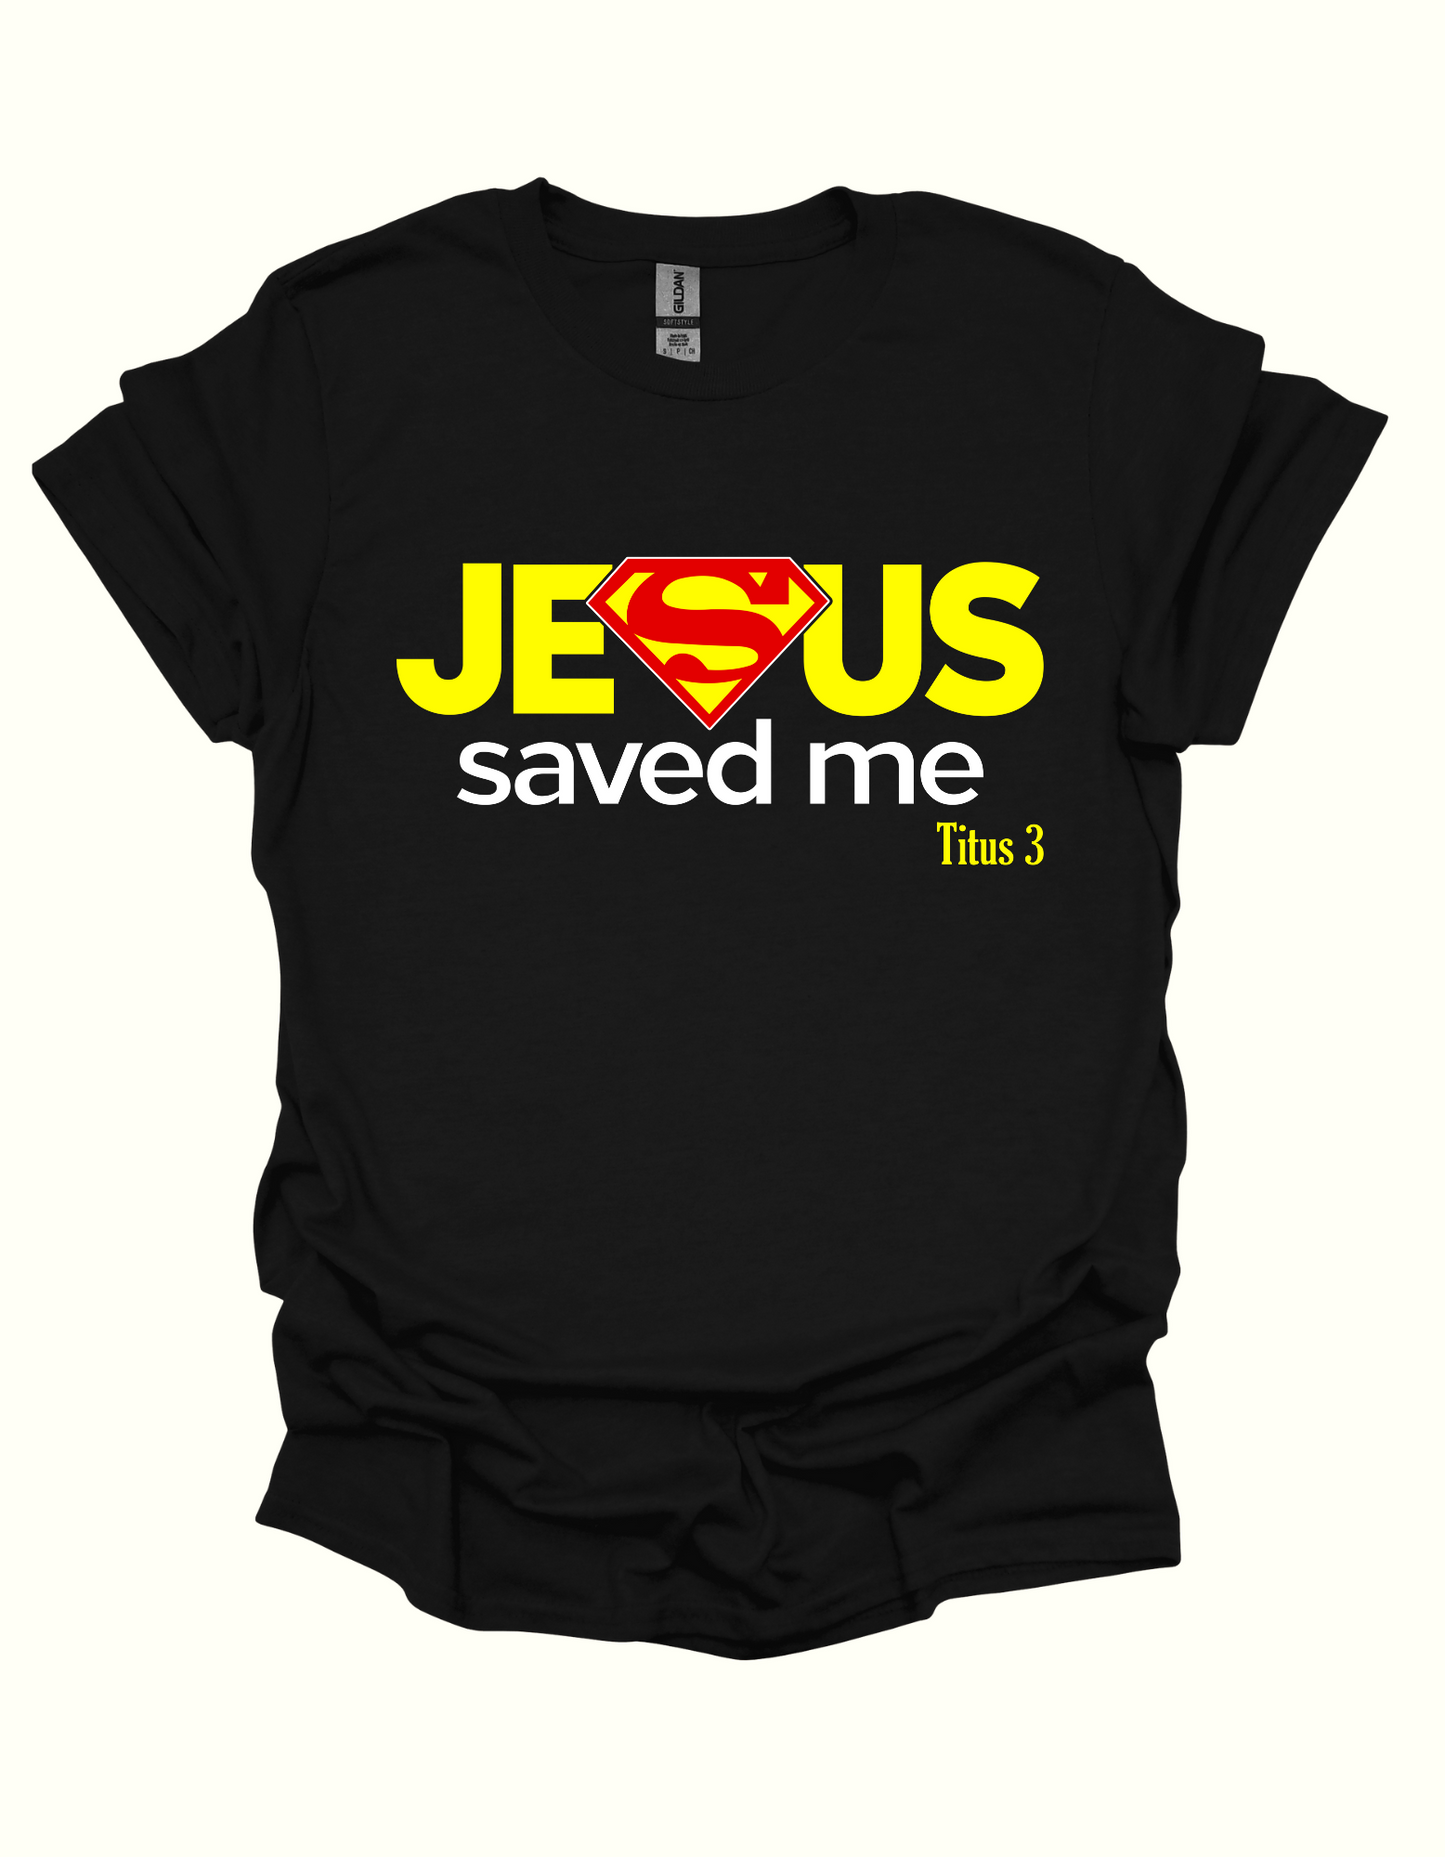 JESUS SAVED ME T-SHIRT